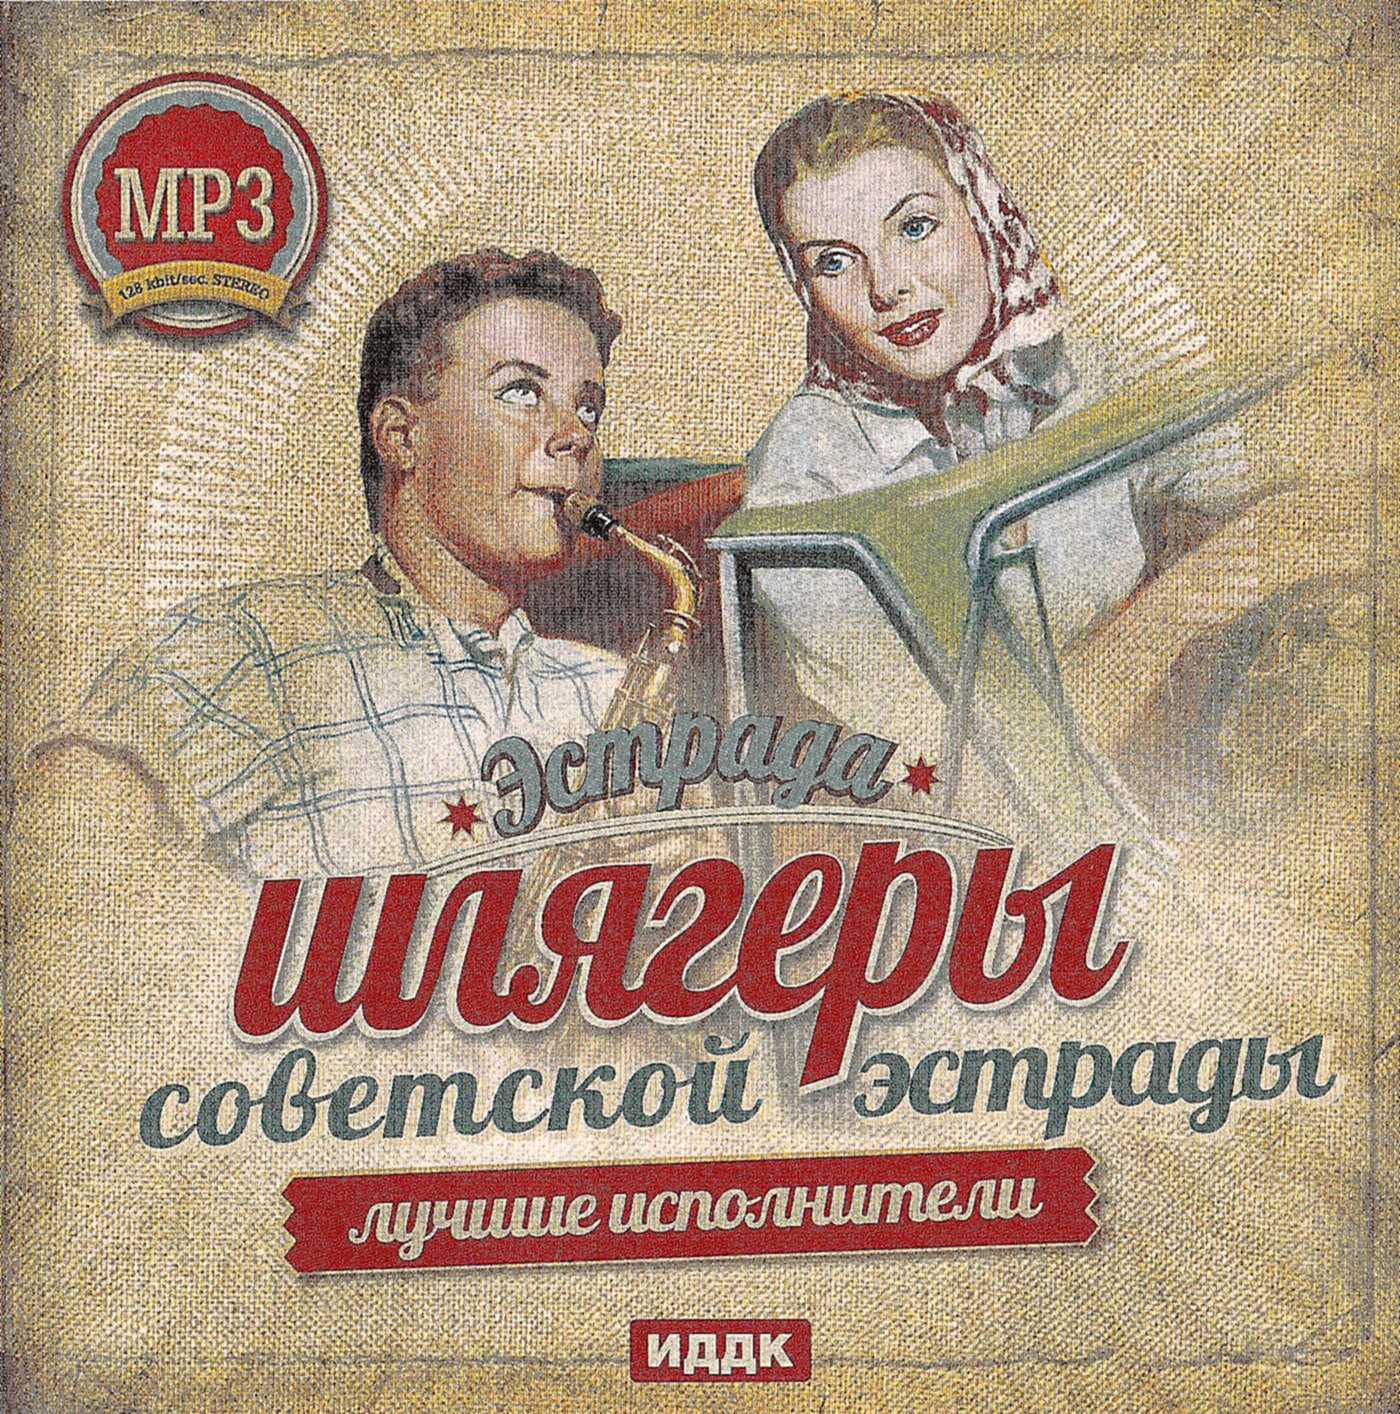 слушать популярную музыку 2000 годов русские